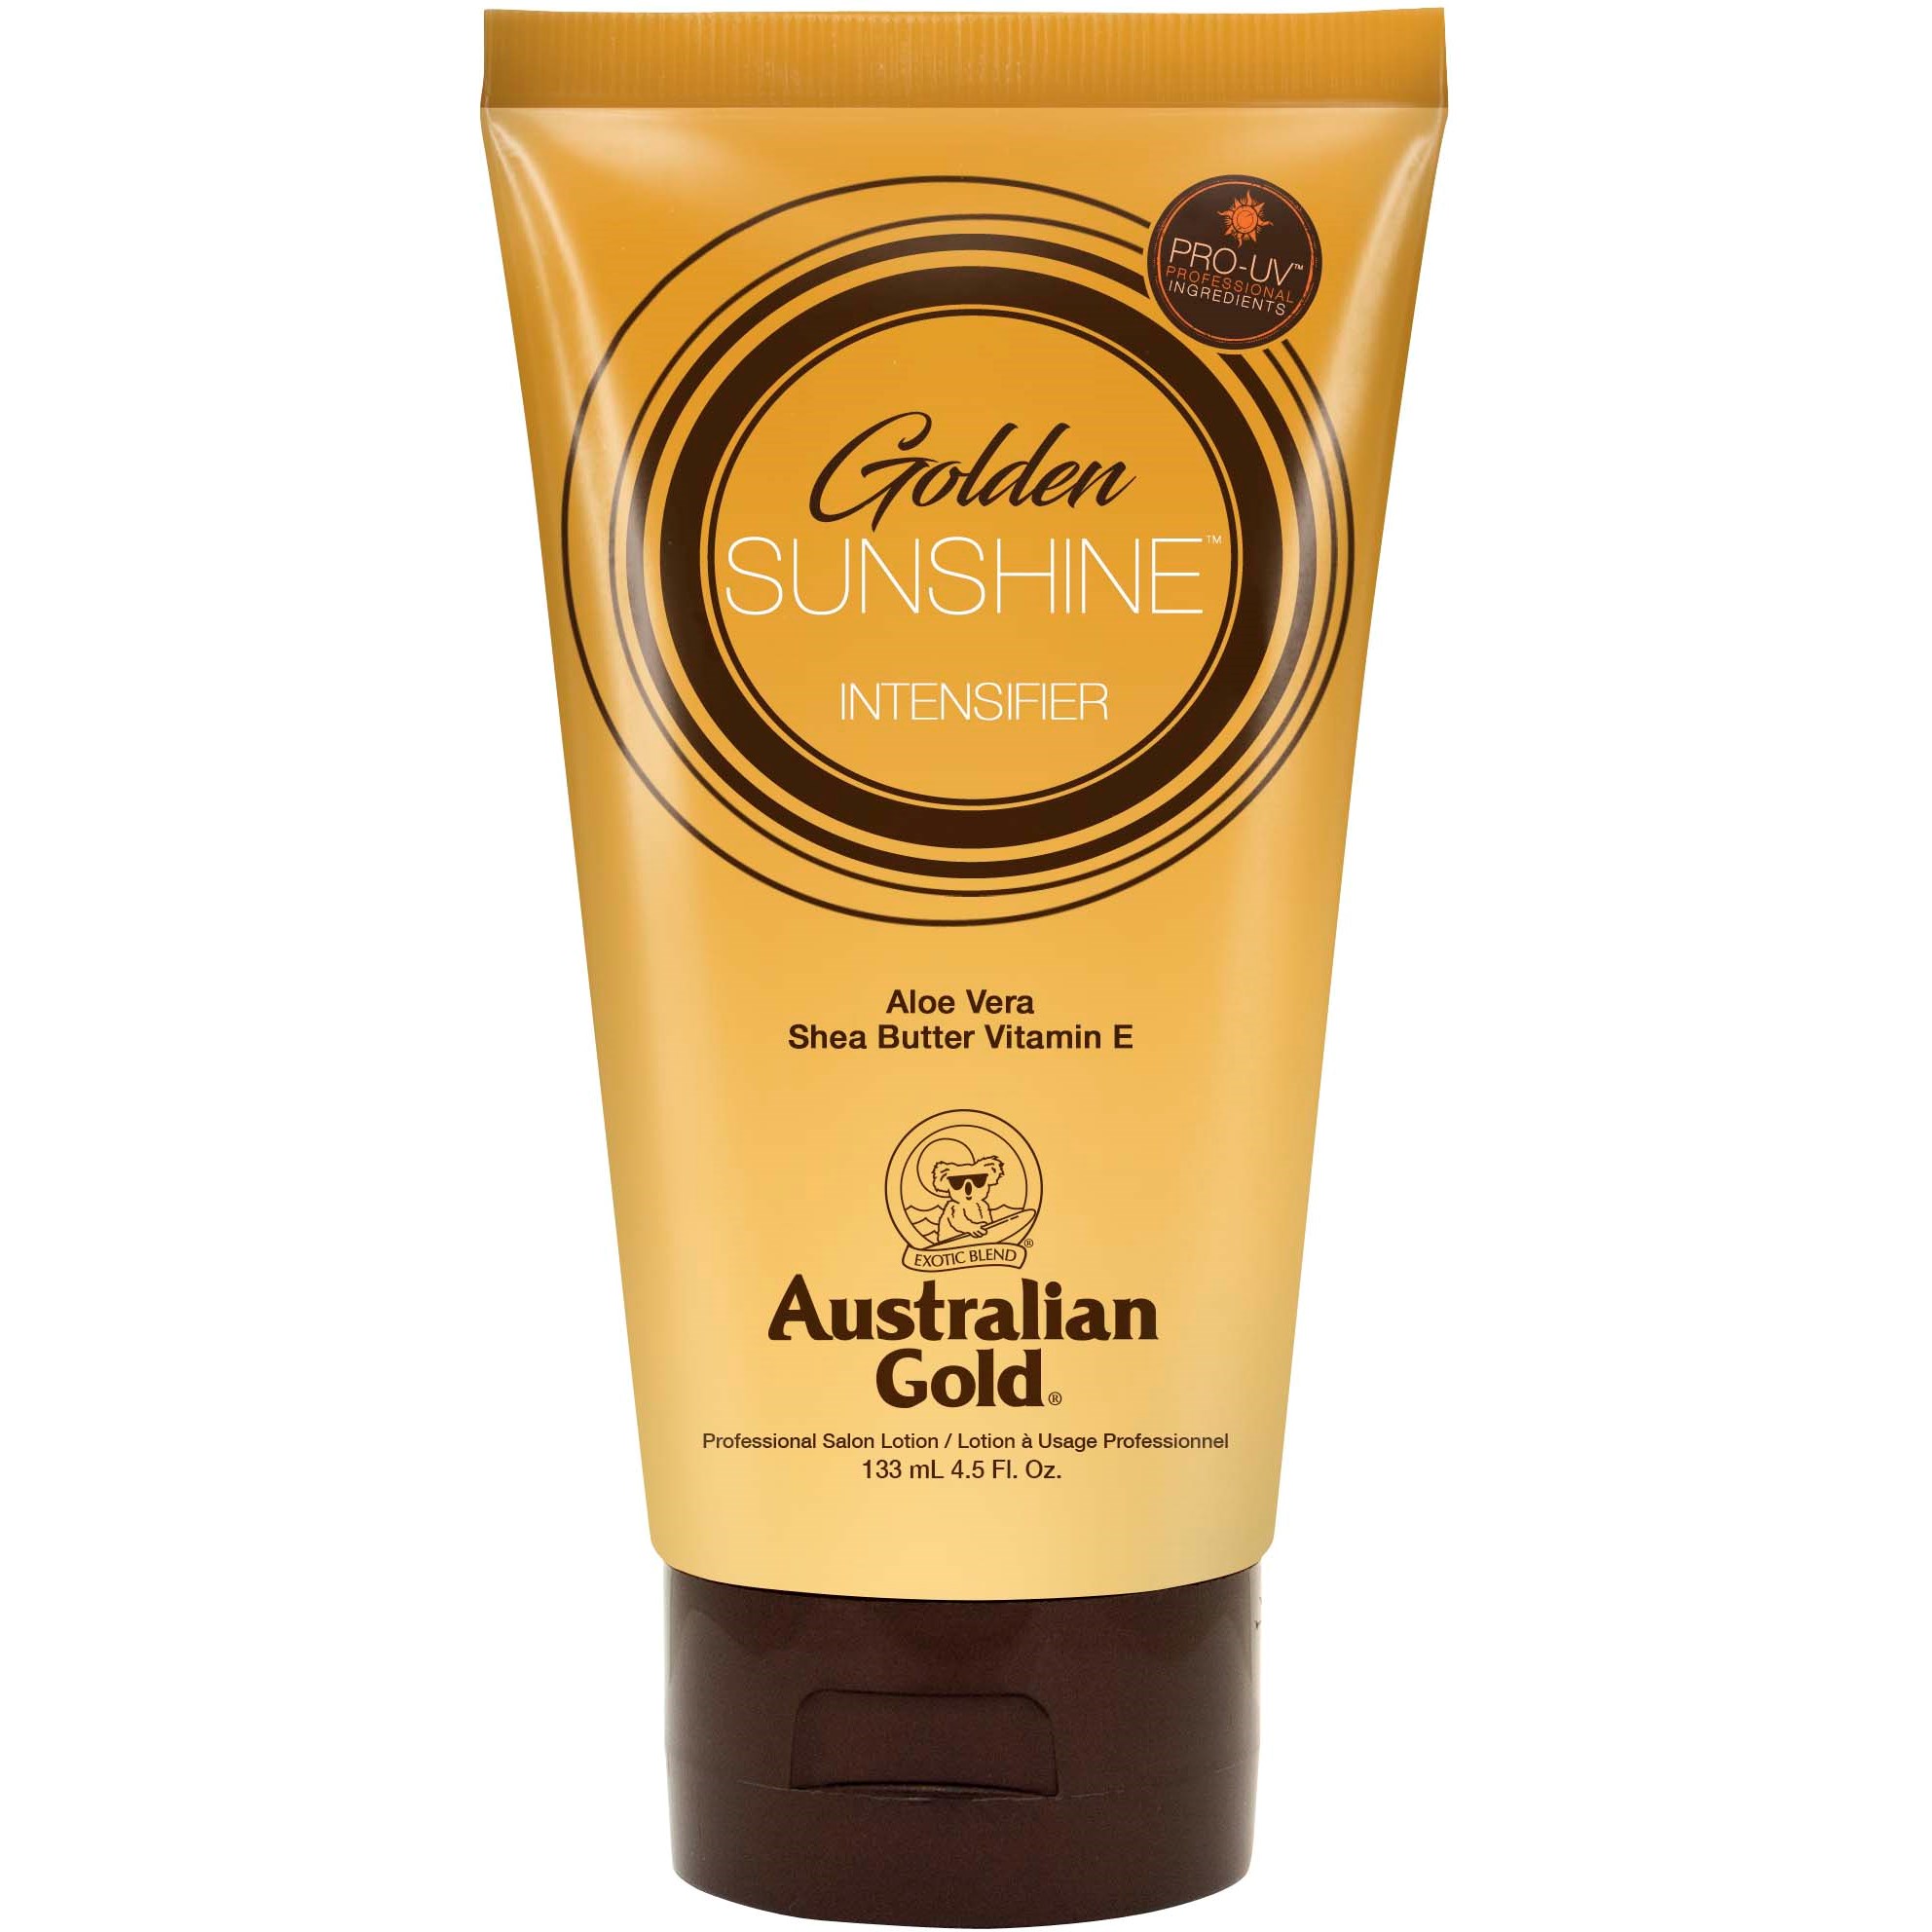 Bilde av Australian Gold Golden Sunshine Intensifier 133 Ml